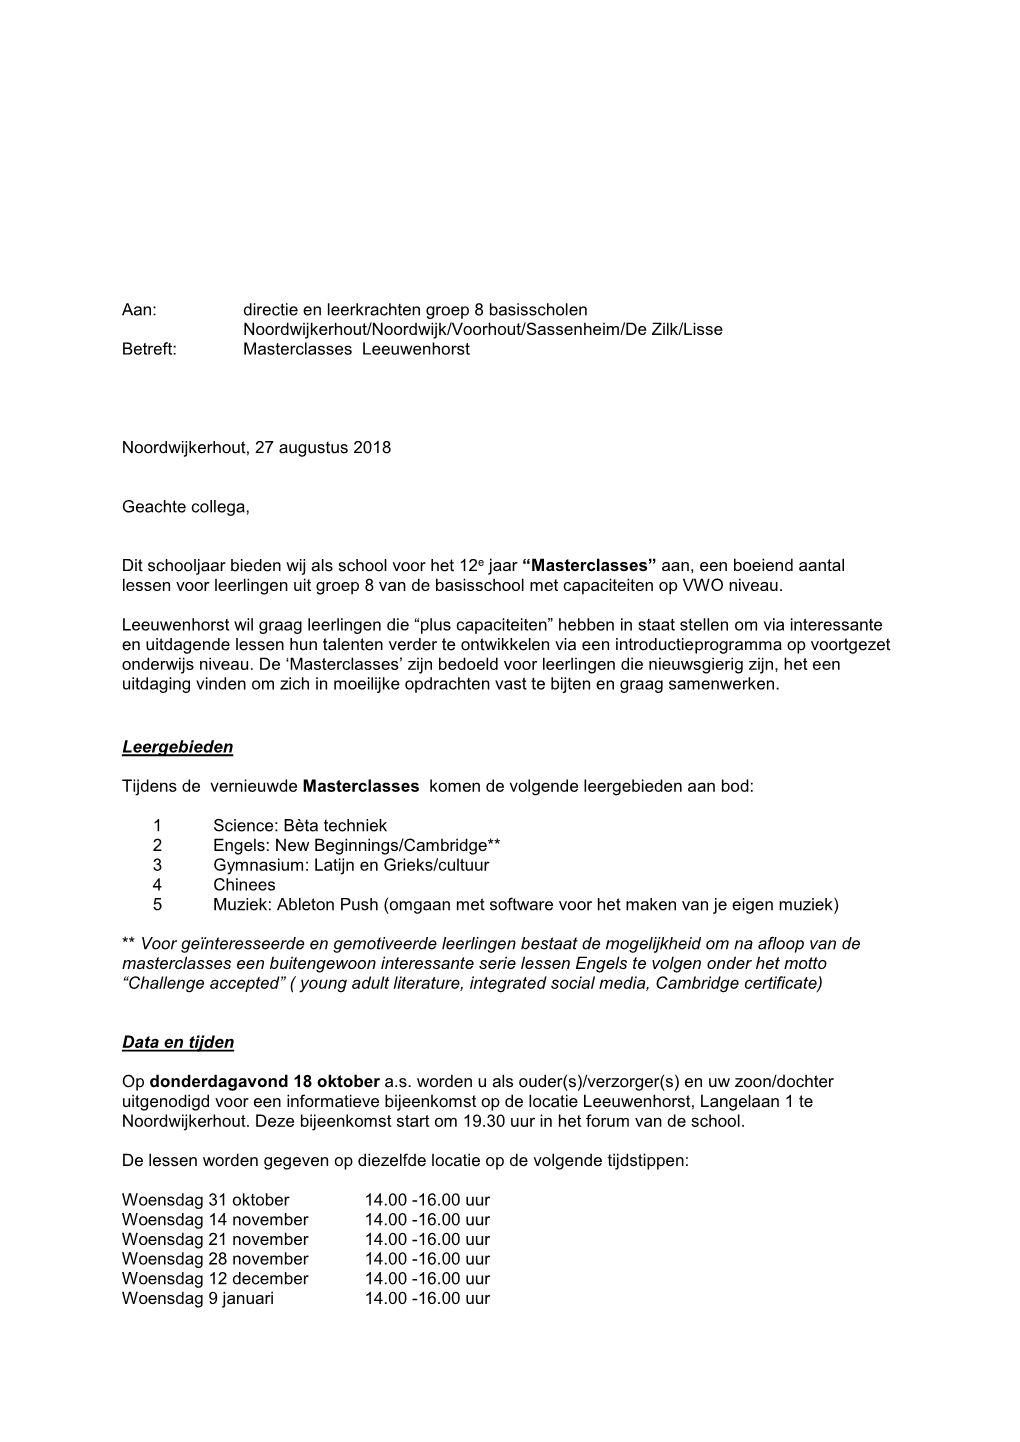 Aan: Directie En Leerkrachten Groep 8 Basisscholen Noordwijkerhout/Noordwijk/Voorhout/Sassenheim/De Zilk/Lisse Betreft: Masterclasses Leeuwenhorst